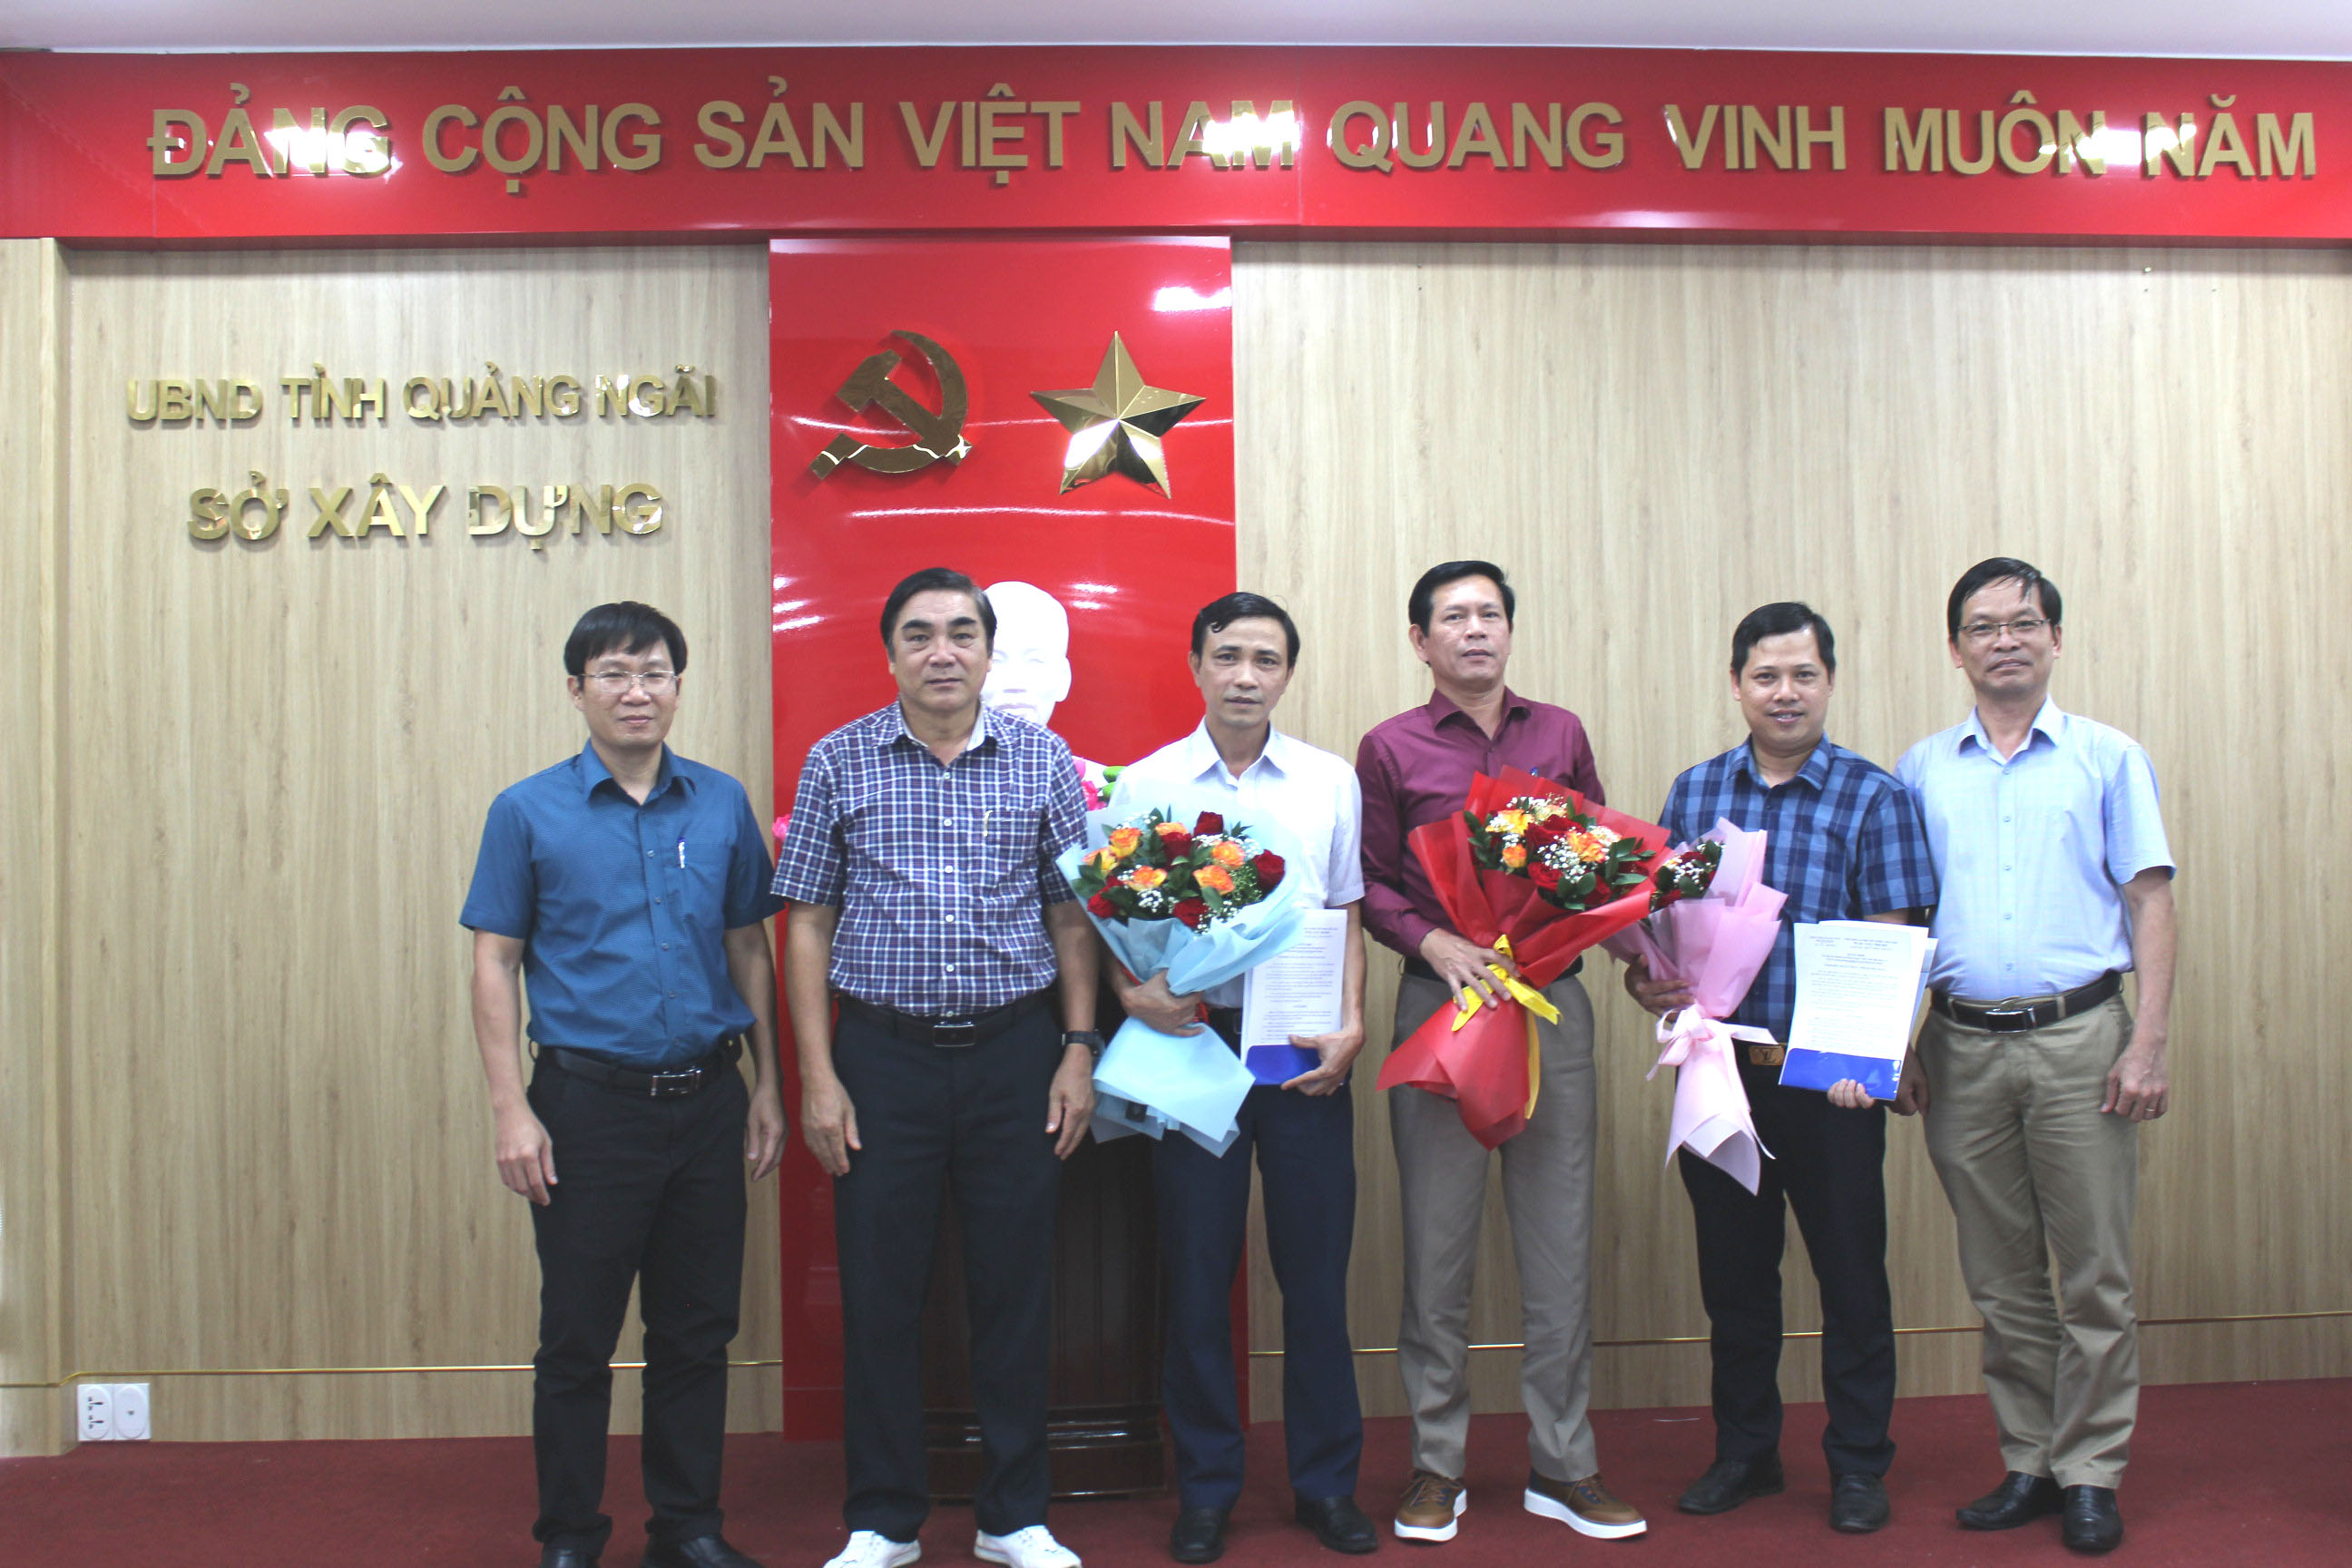 Tập thể lãnh đạo Sở trao Quyết định và tặng hoa chúc mừng cho đồng chí Huỳnh Văn Viện và đồng chí Phan Ngọc Tuấn Anh